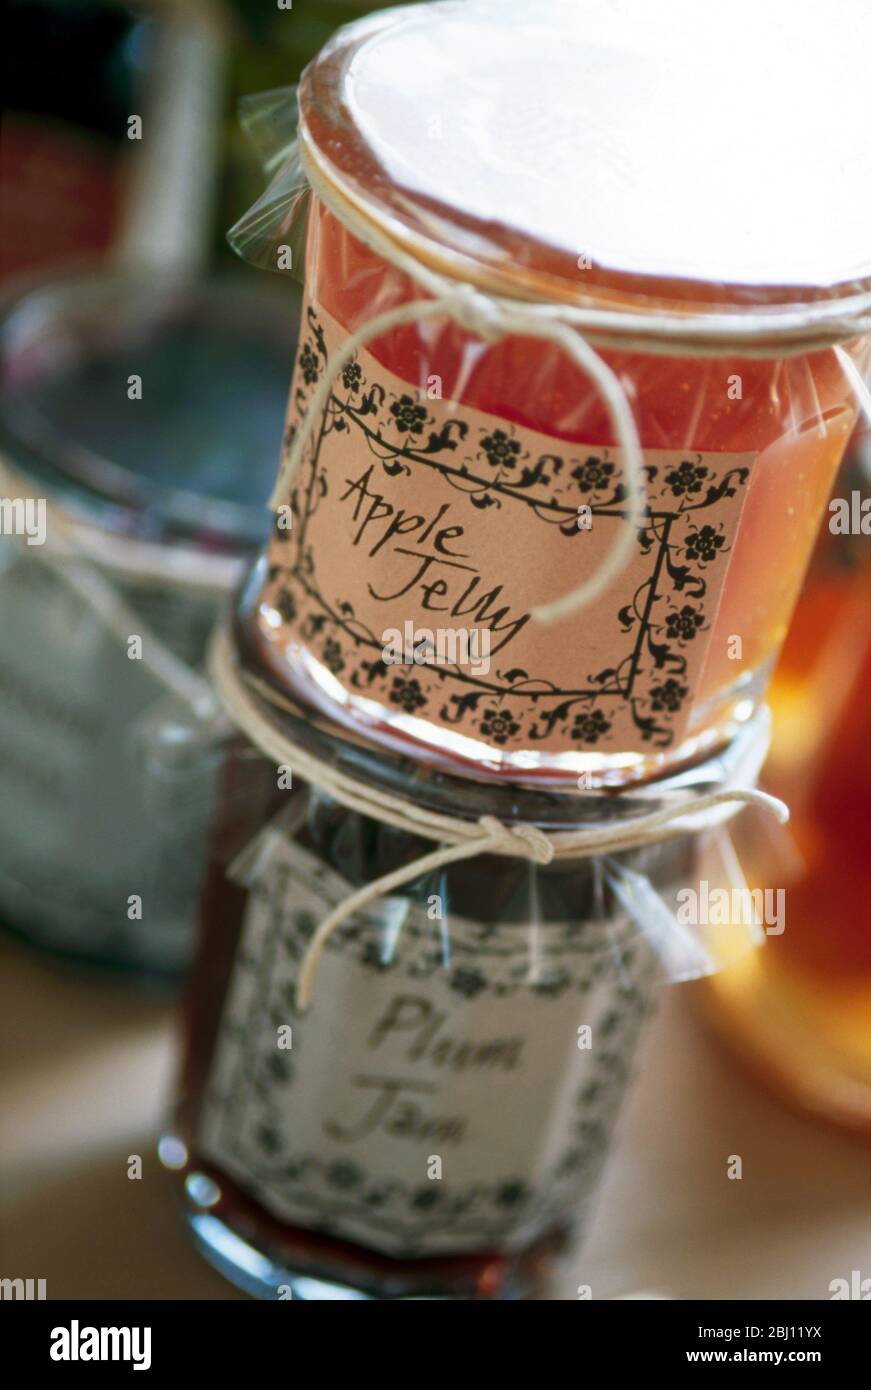 Sammlung von dekorativ verpackten Gläsern von Fruchtgelees und Marmeladen - Stockfoto